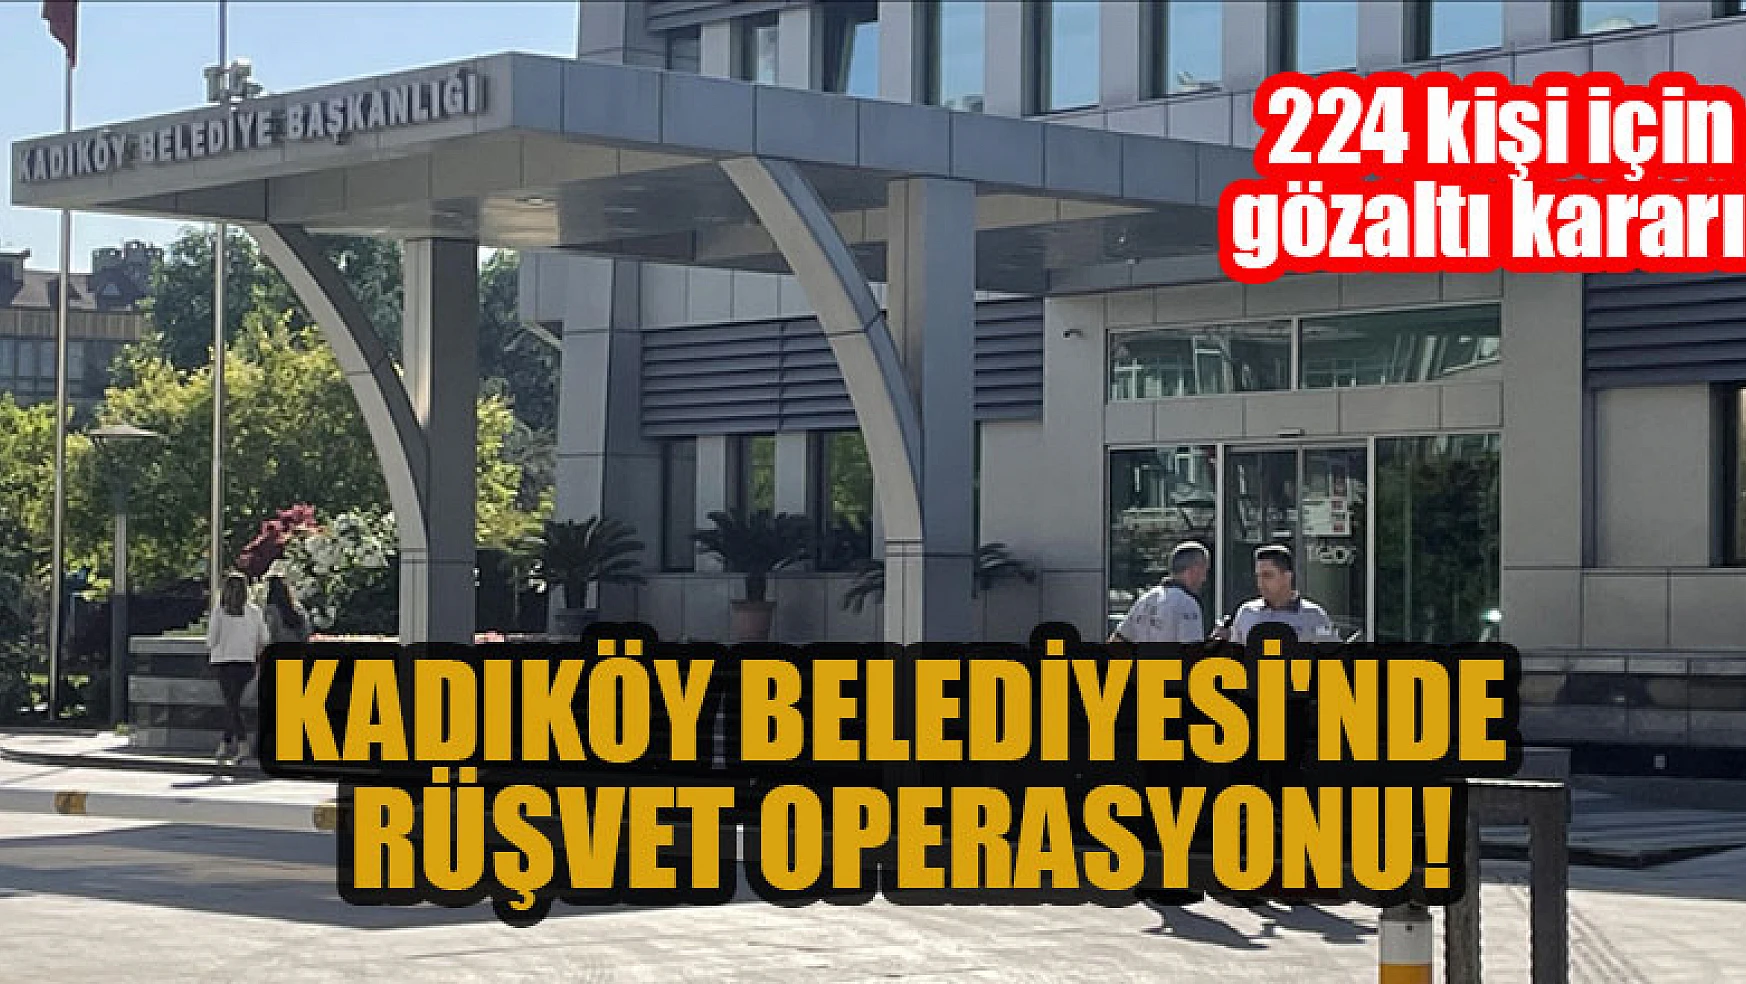 Kadıköy Belediyesi'nde rüşvet operasyonu: 224 kişi için gözaltı kararı!